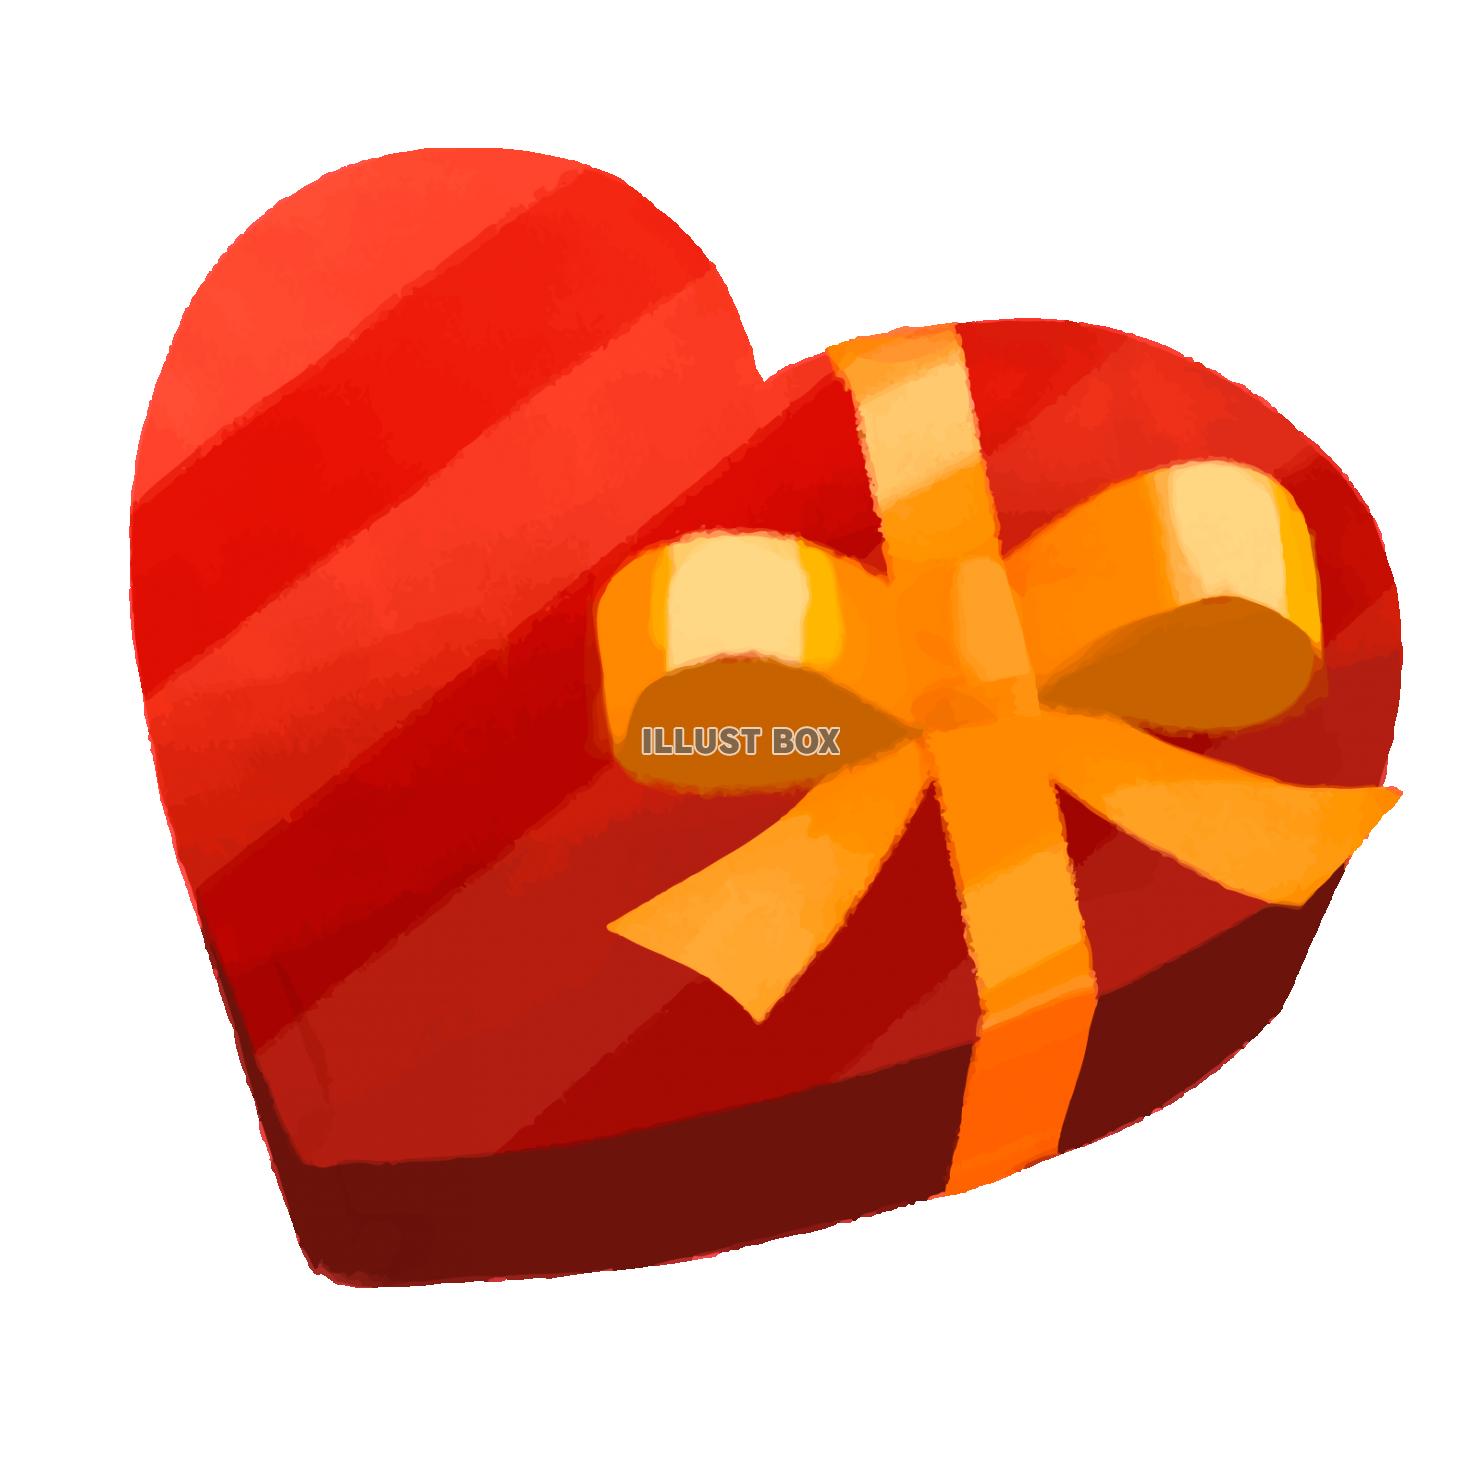 無料イラスト 水彩タッチの手書きのバレンタインチョコ ハート型のプレゼント